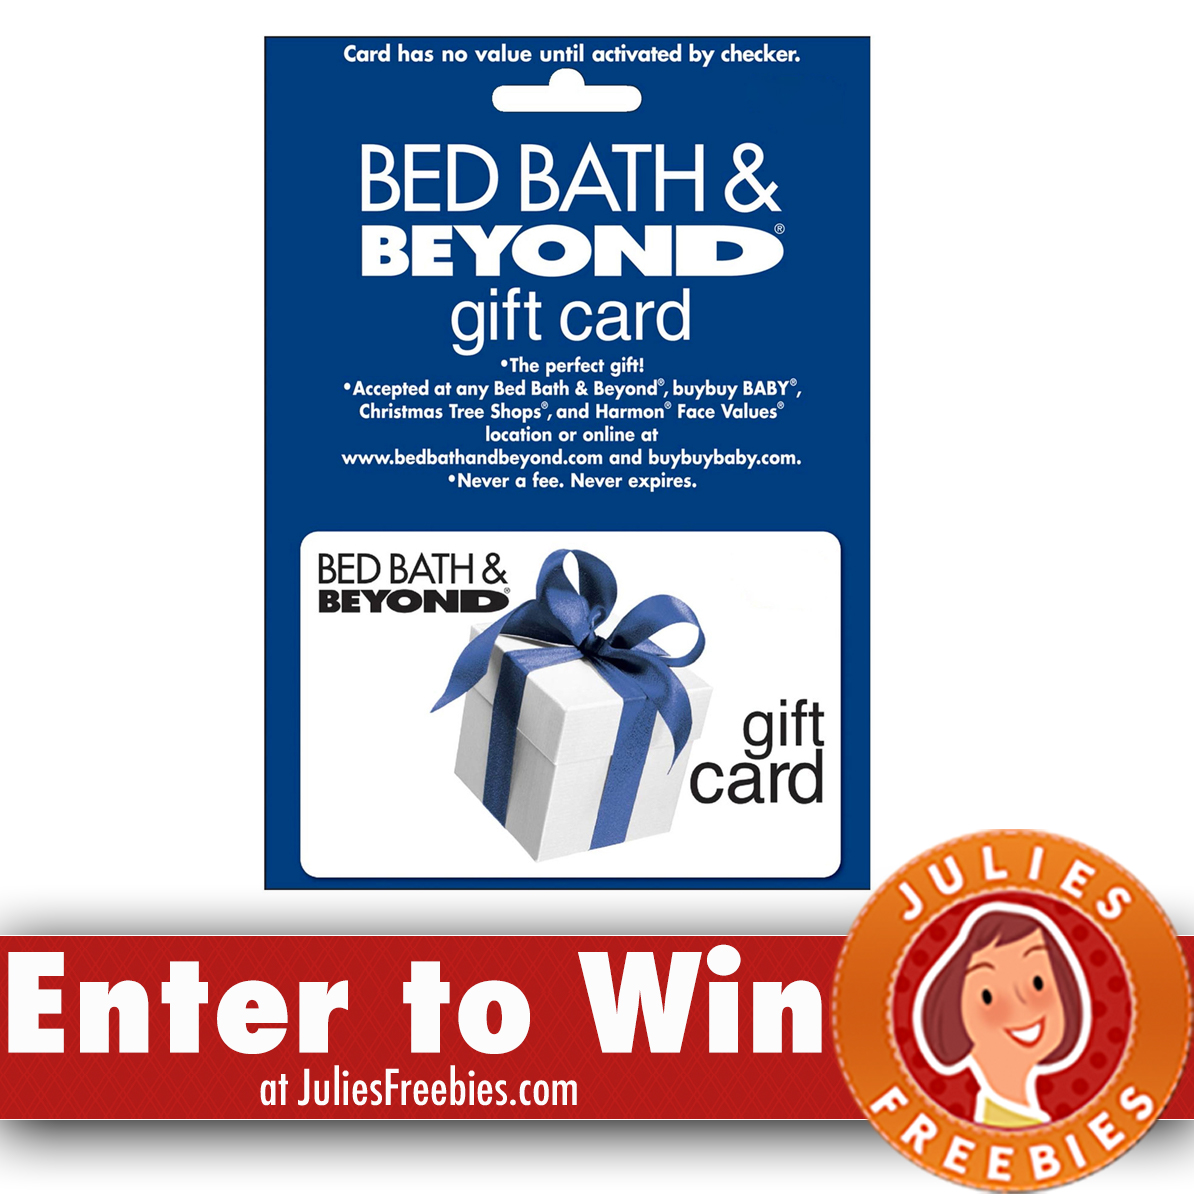 bed bath gift card balance